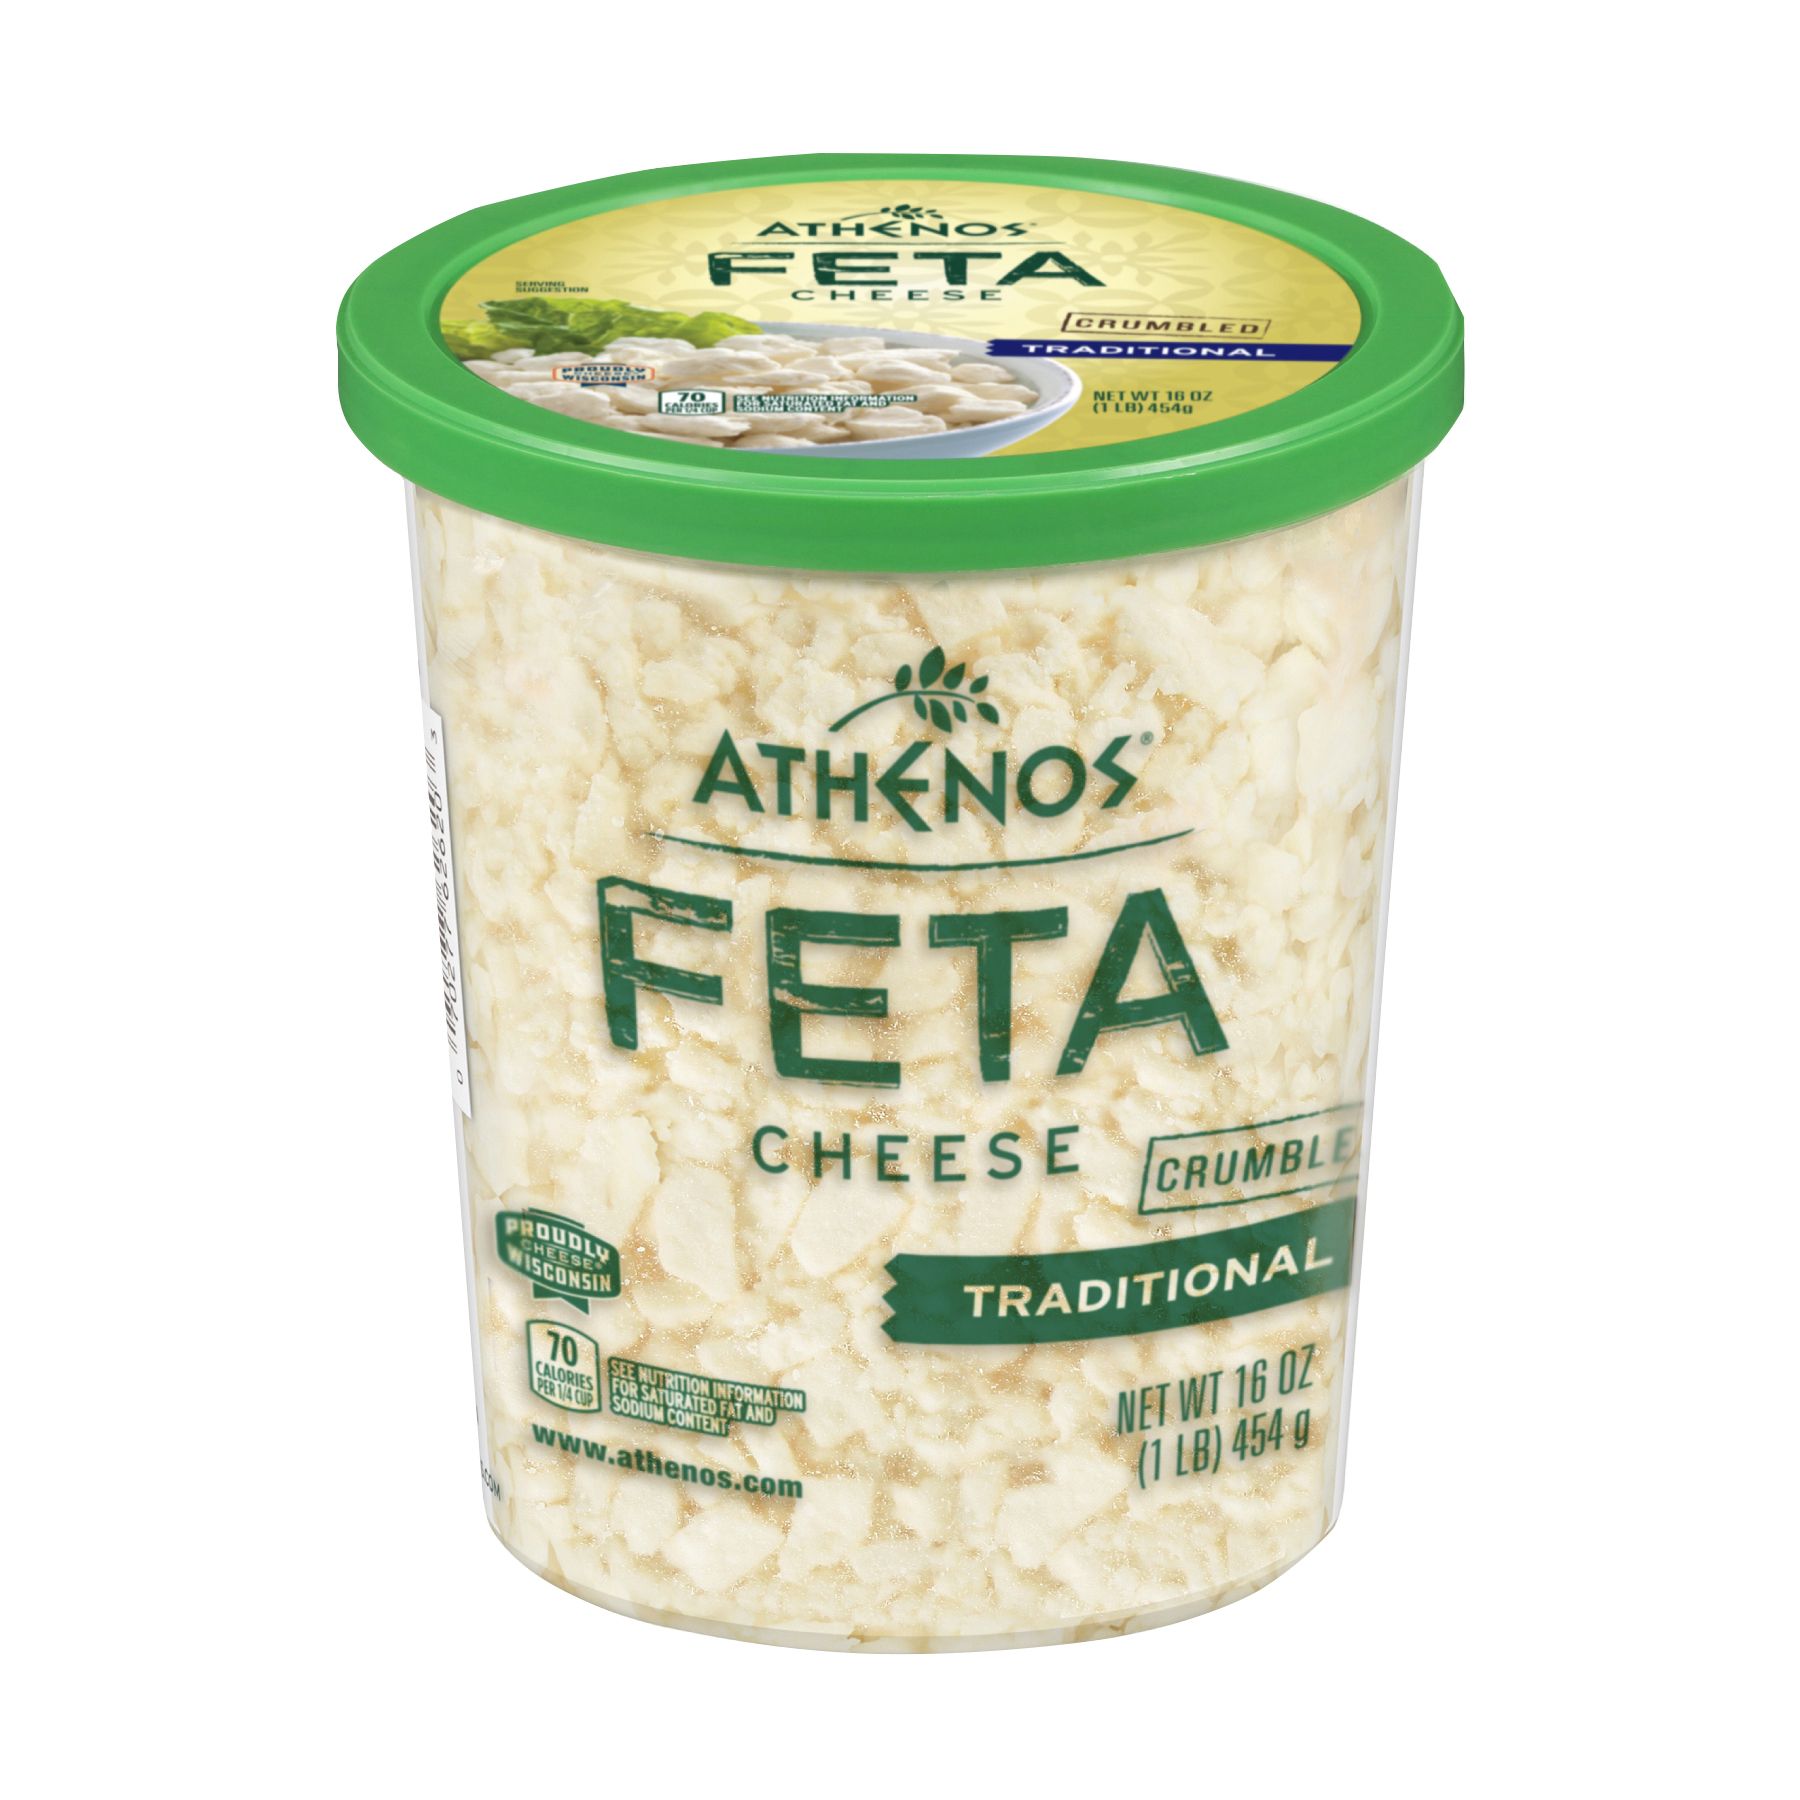 Athenos Traditional Feta Crumbled Cheese, 16 oz.